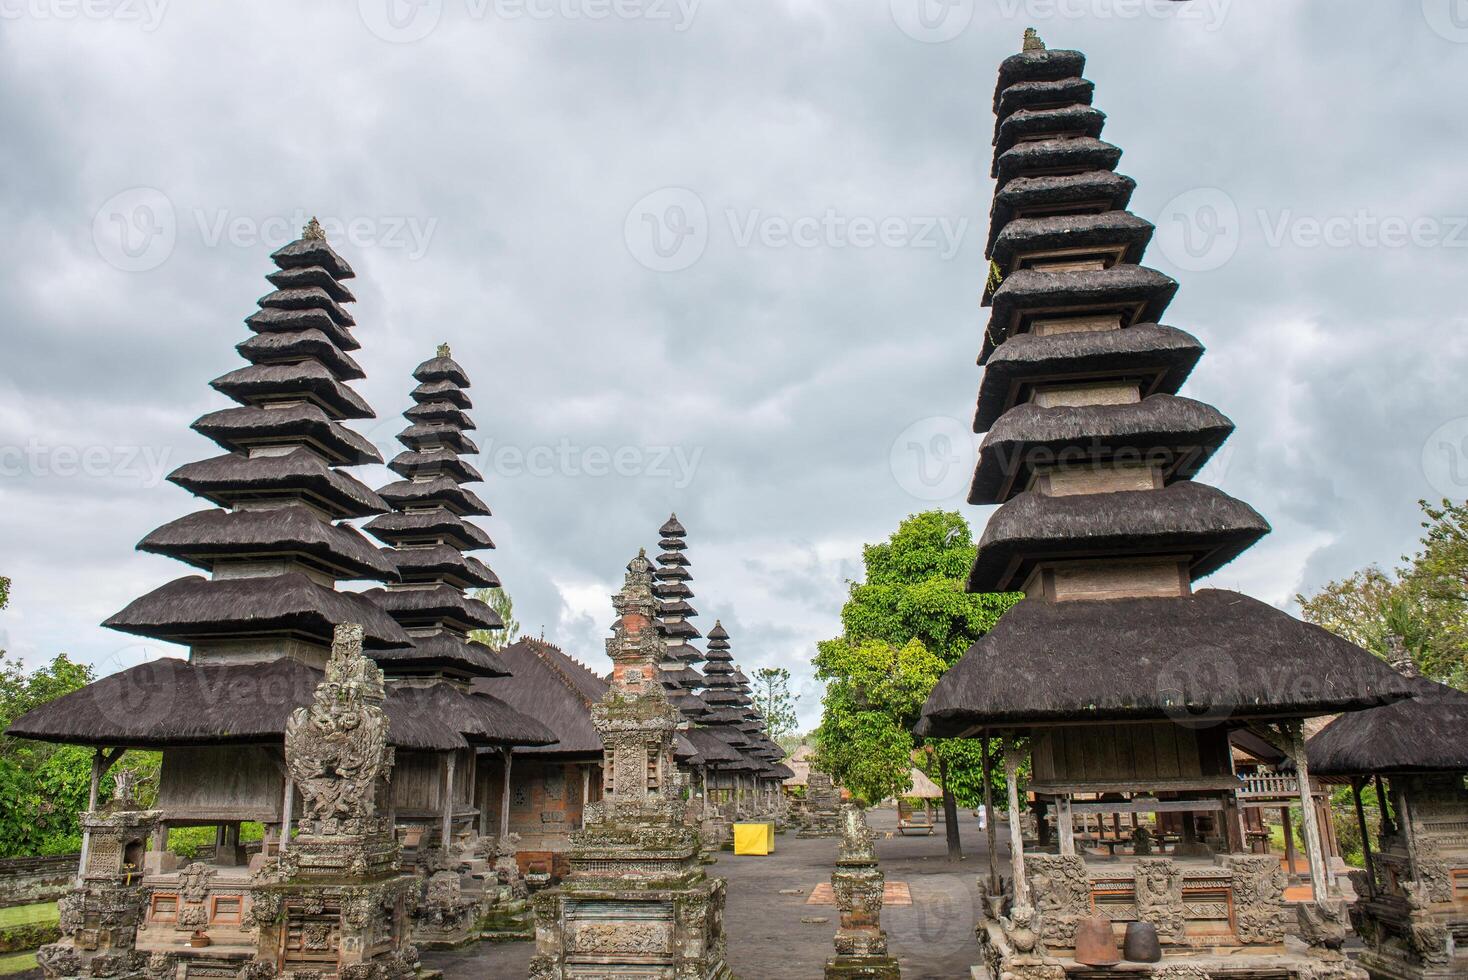 uno de el popular templo en bali llamado pura taman ayun el real templo de mengwi imperio en badung regencia, bali, Indonesia. ver en el nublado día. foto